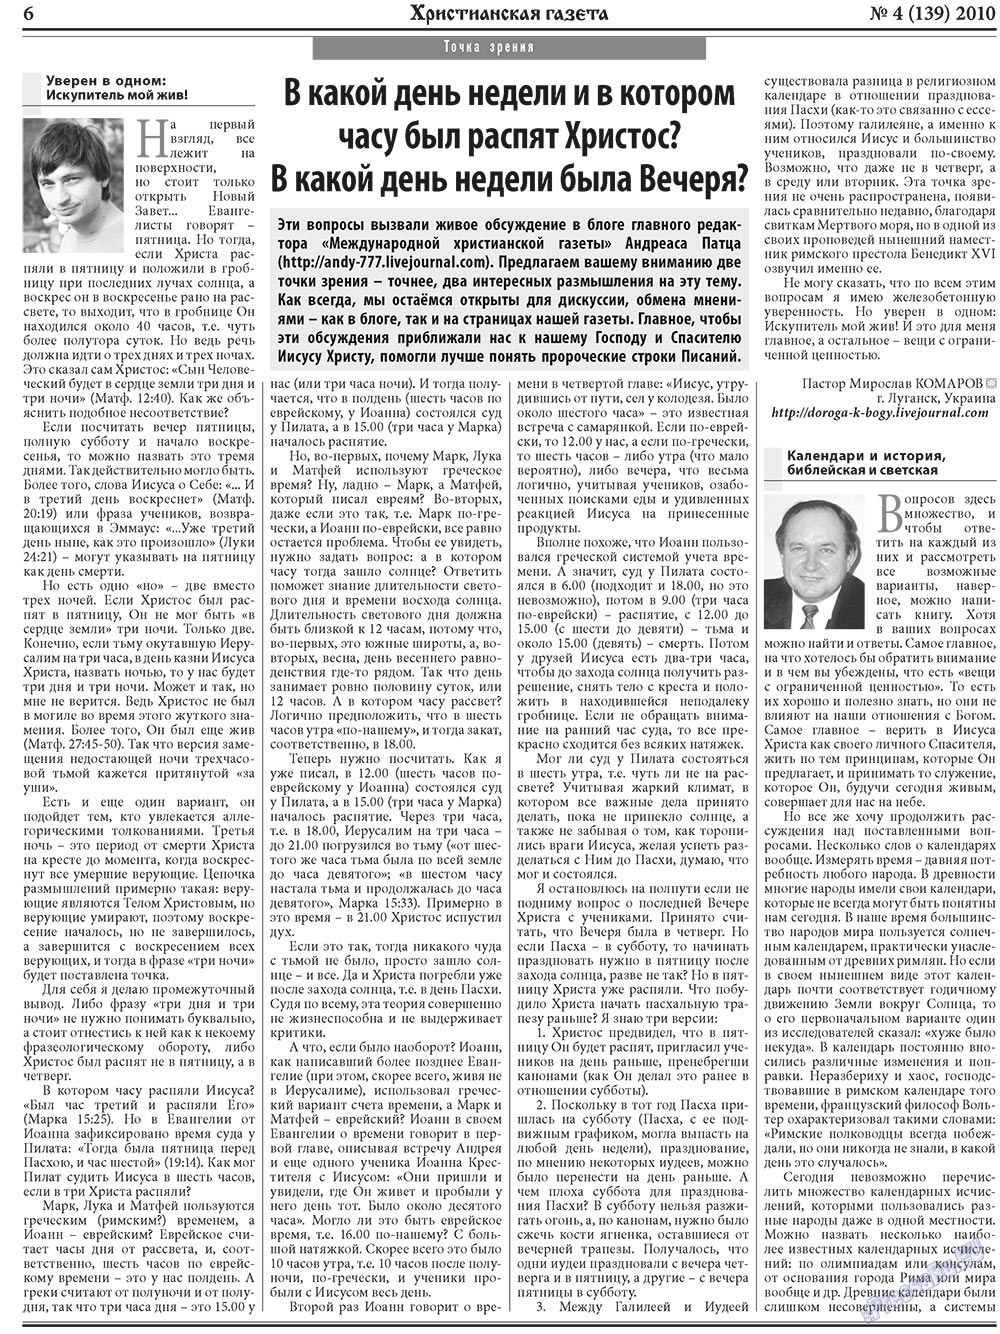 Христианская газета, газета. 2010 №4 стр.6